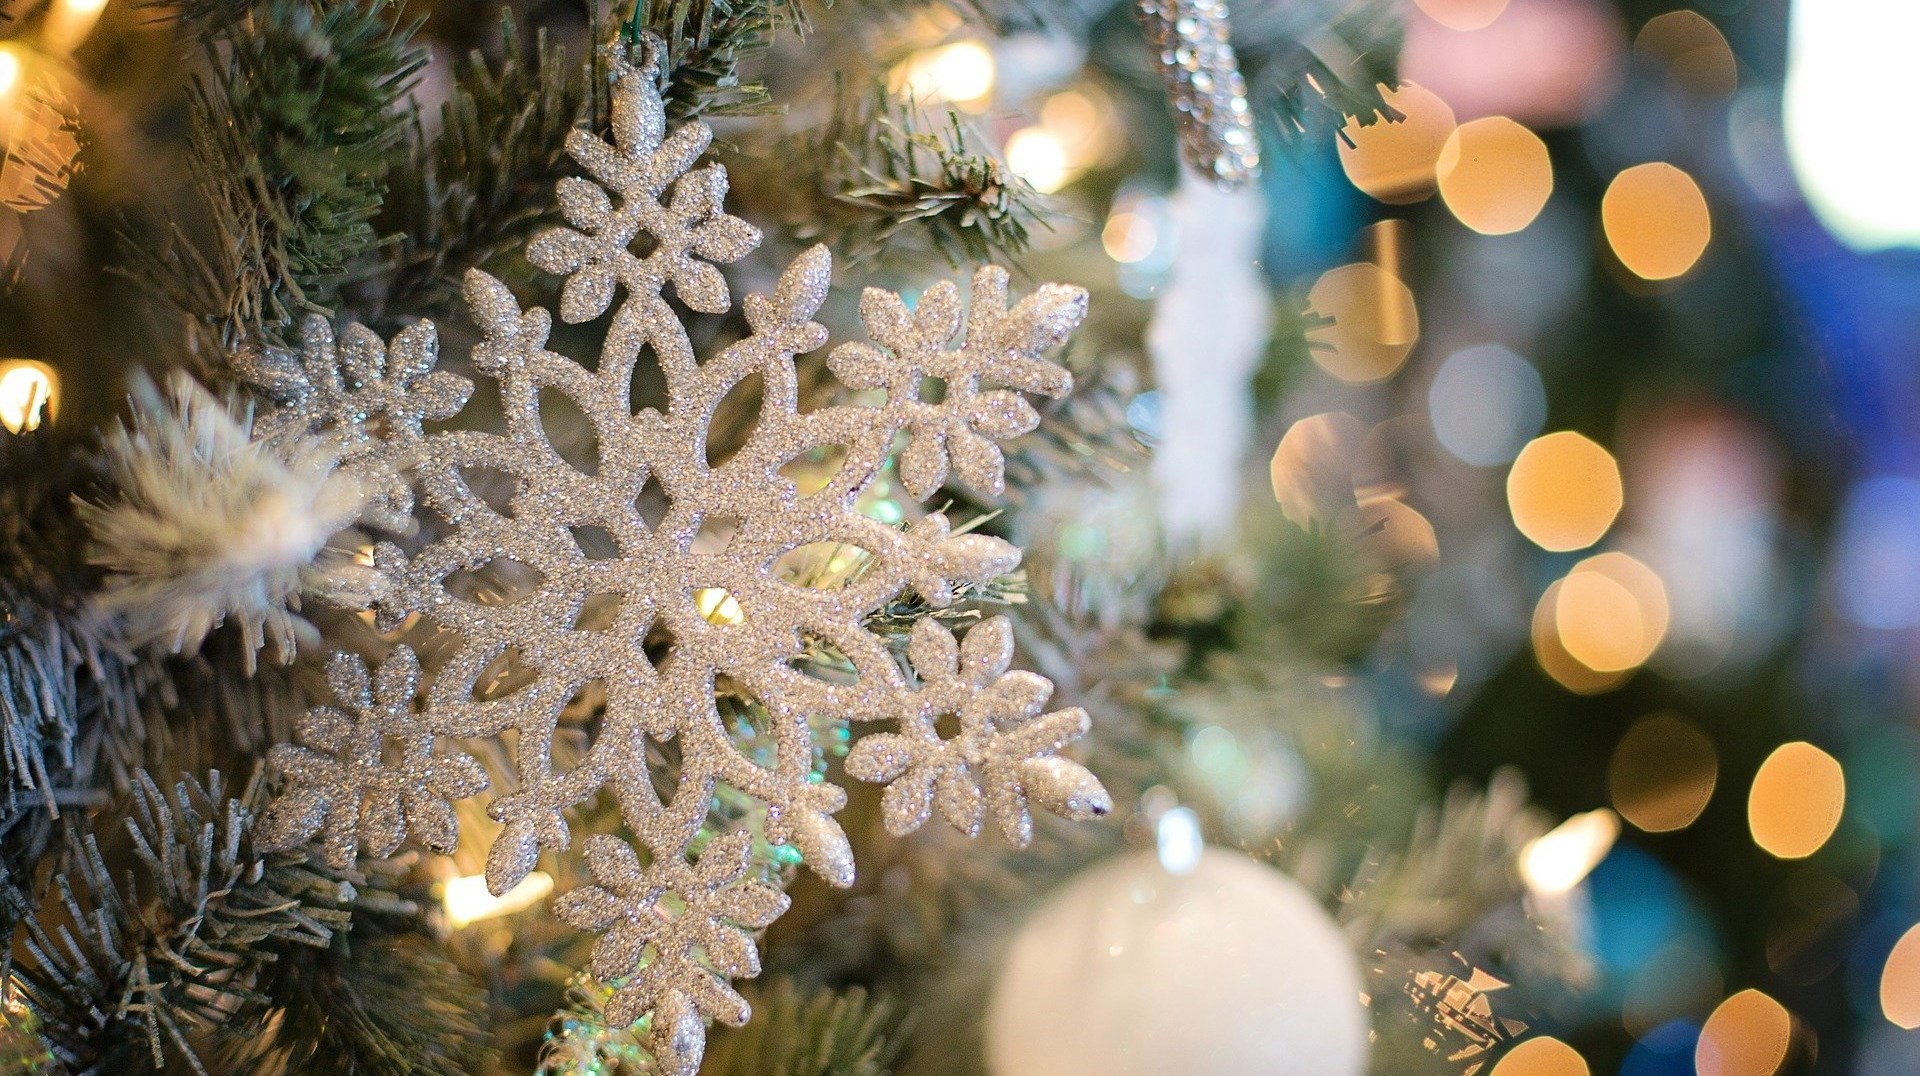 en närbild på en vit snöflinga som hänger i en julgran